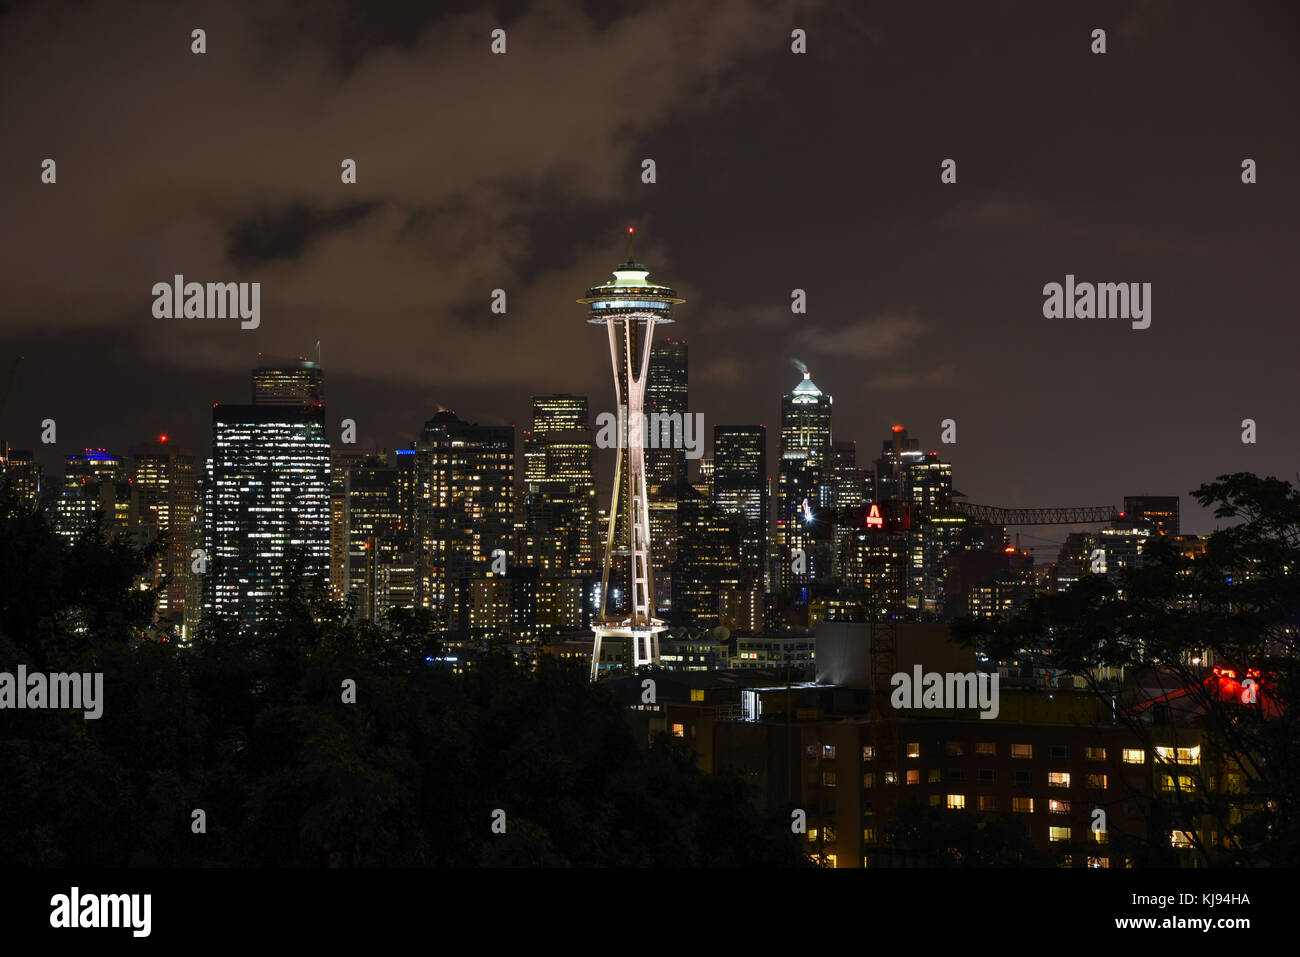 Abenddämmerung Stadtbild von Seattle Space Needle Skyline bei Nacht mit Beleuchtung Stockfoto